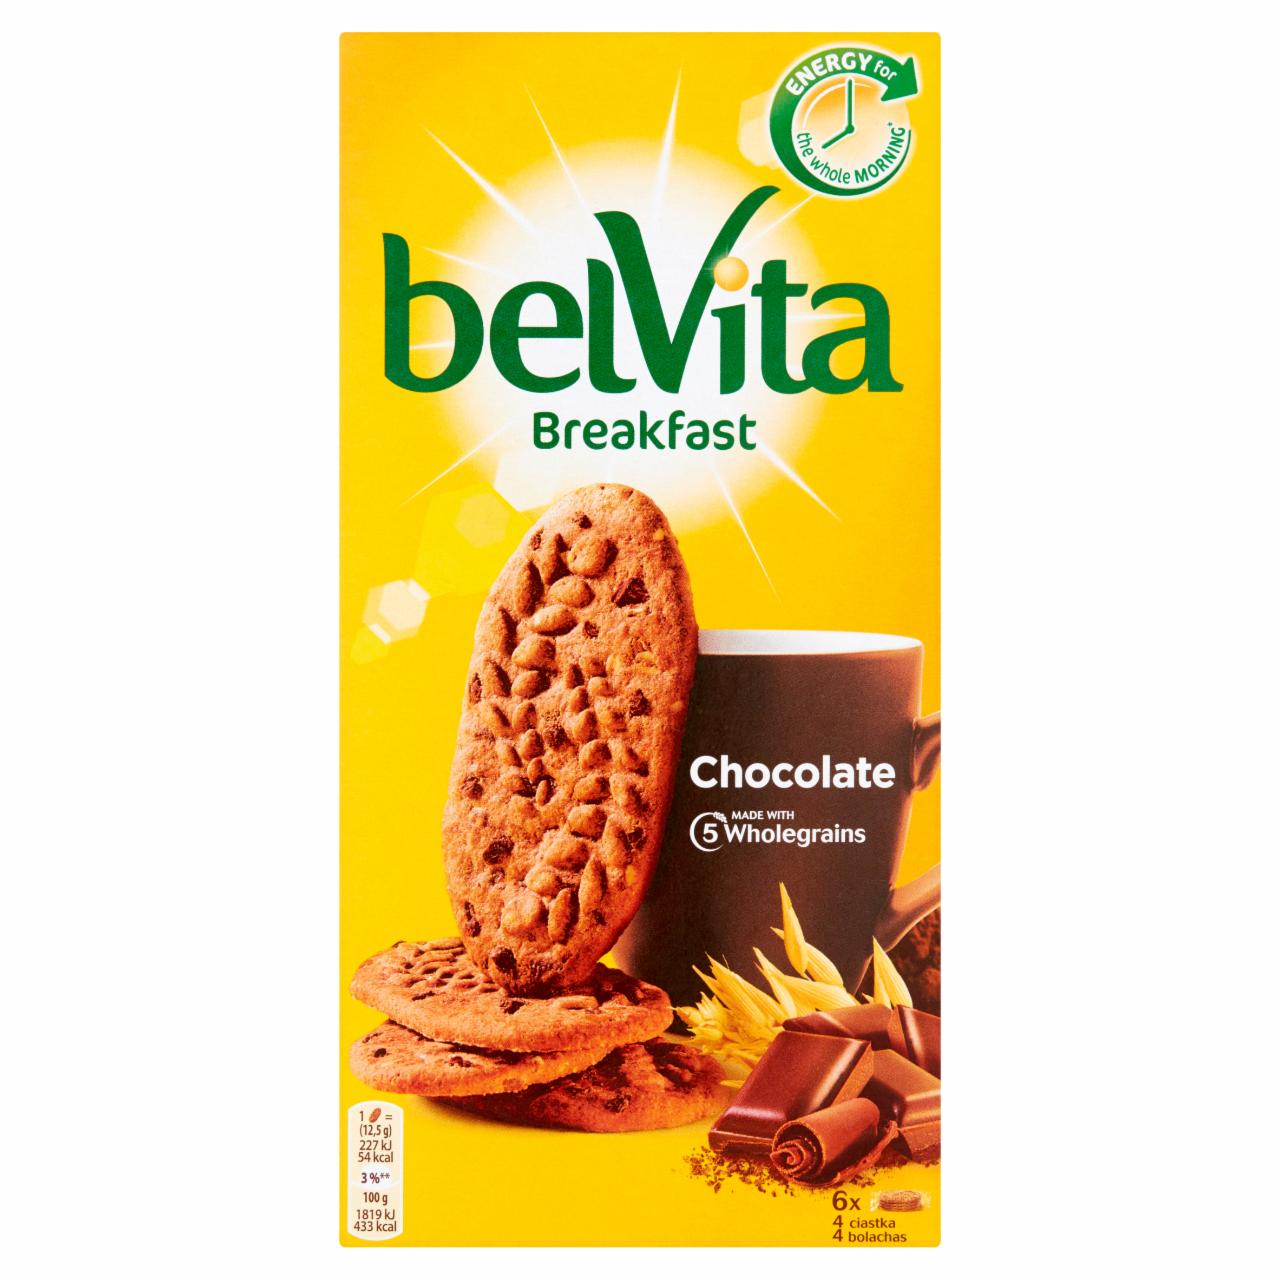 Zdjęcia - belVita Breakfast Ciastka zbożowe o smaku kakaowym z kawałkami czekolady 300 g (6 x 50 g)